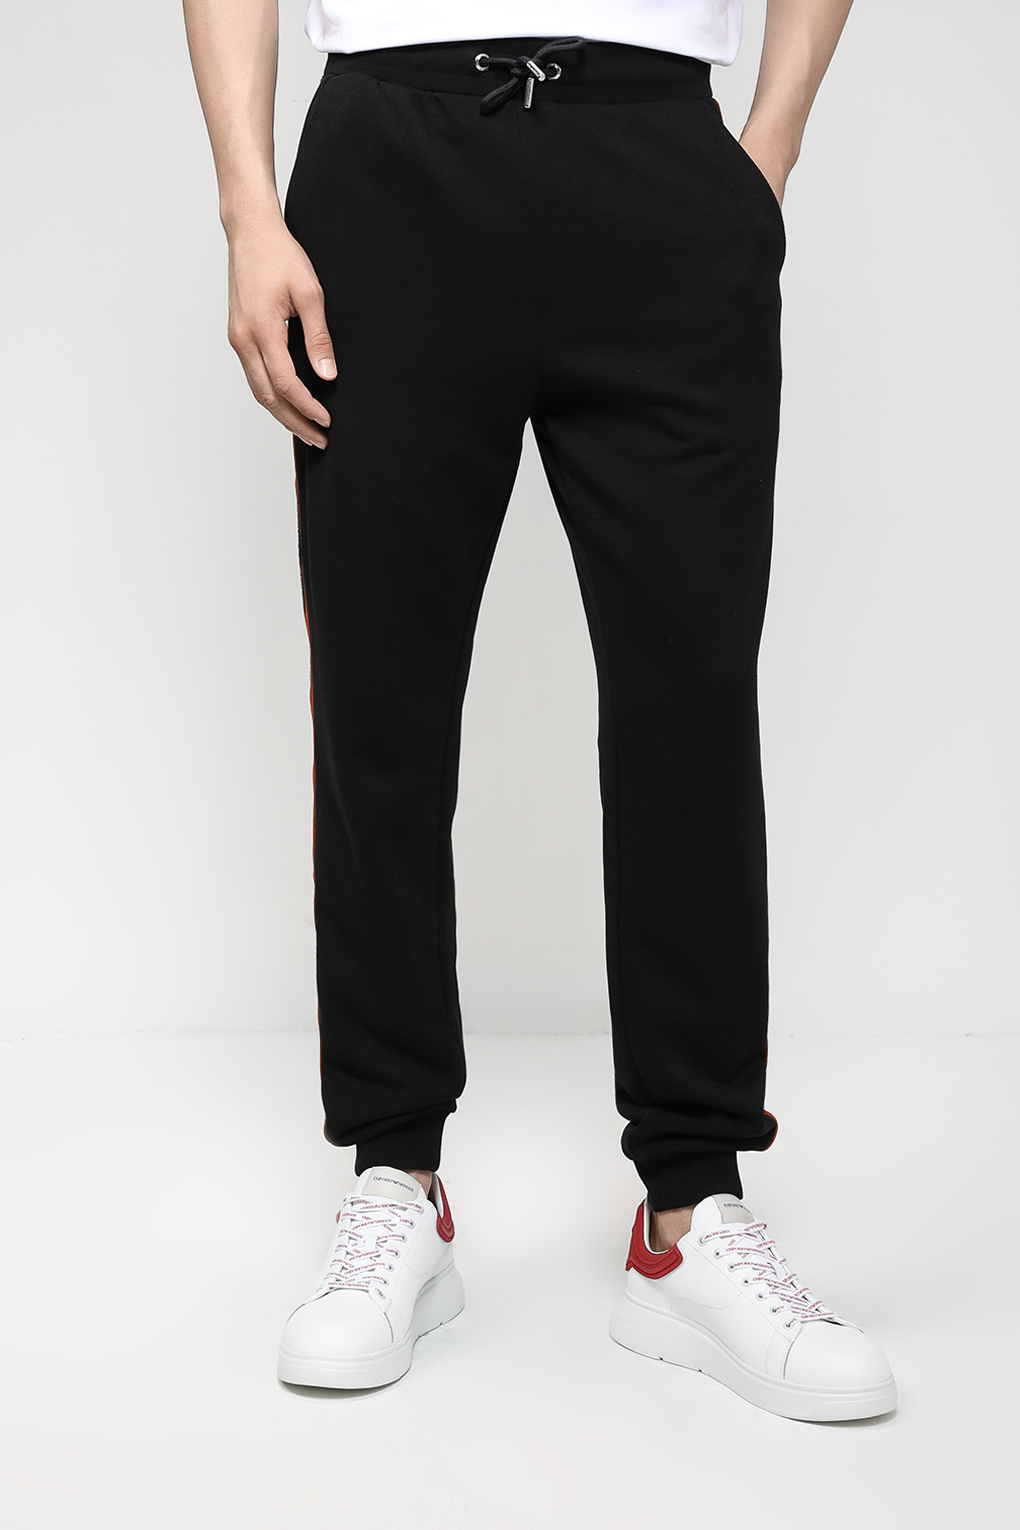 Спортивные брюки мужские Karl Lagerfeld 532900-705425 черные M